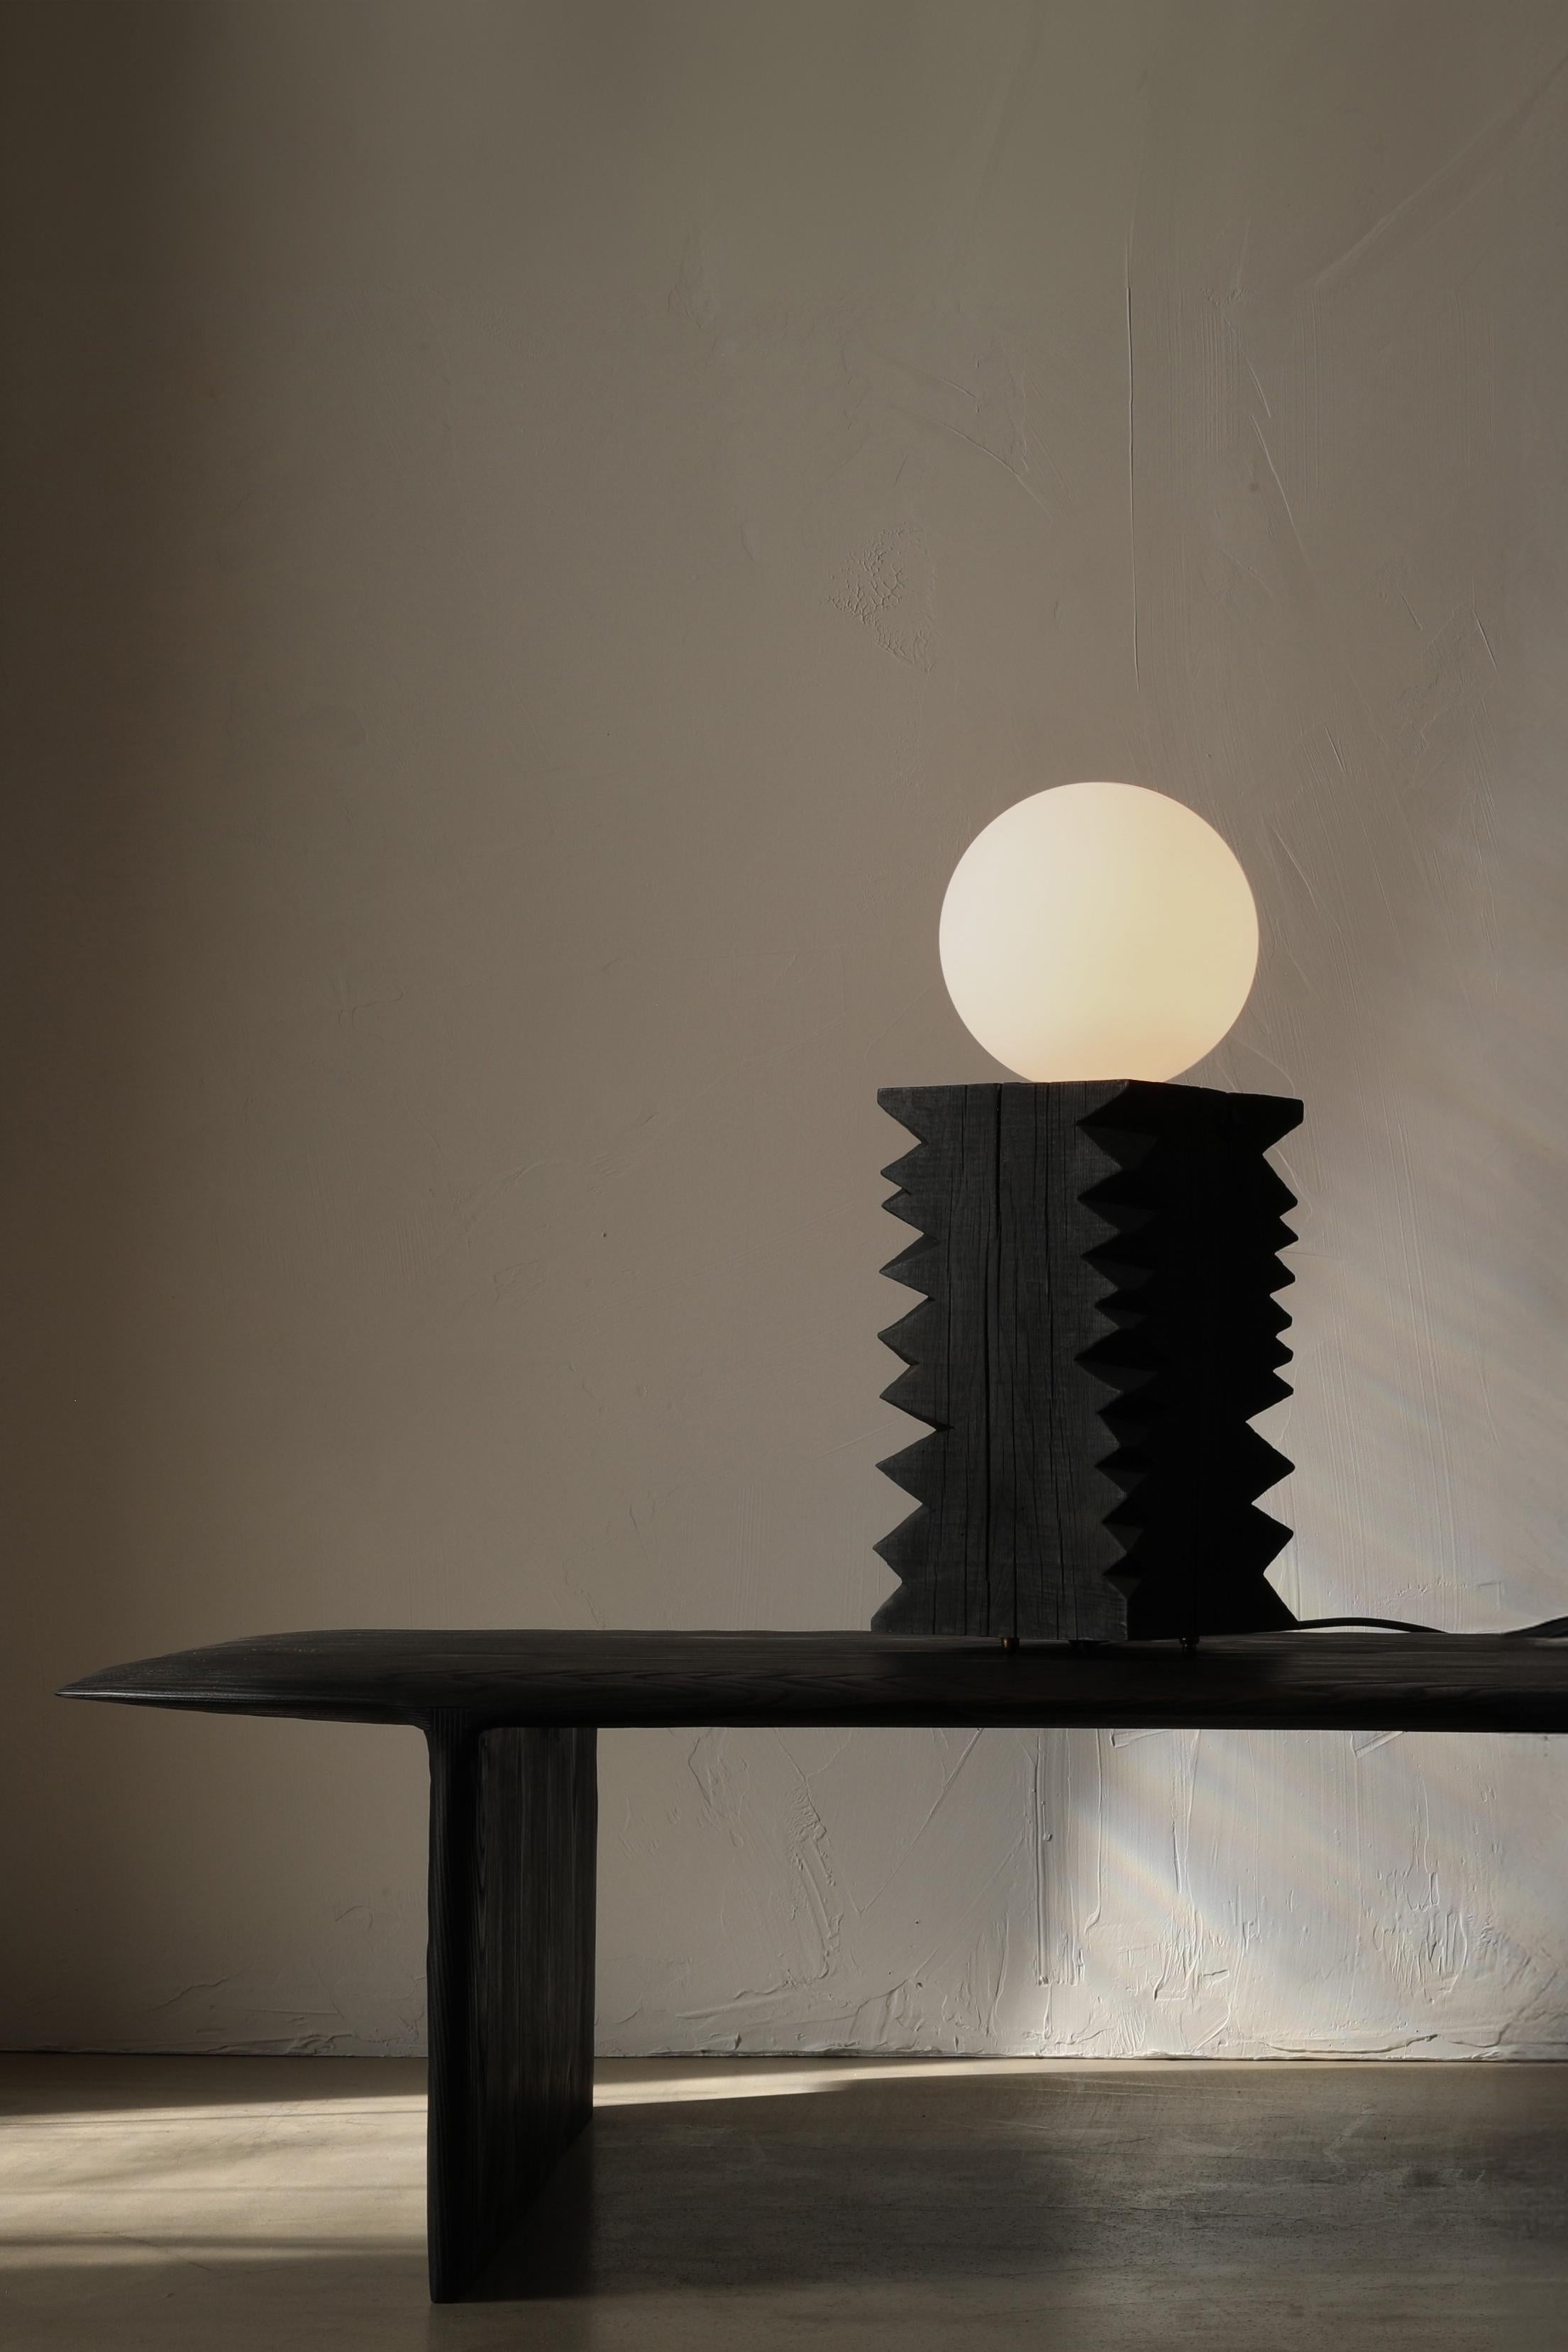 La lampe Notch est une lampe de table en chêne massif dotée d'une grande ampoule à globe dépoli. La lampe repose sur quatre pieds en bronze et s'allume sur le cordon à l'aide d'un variateur d'intensité.

Cette Collection trouve son origine dans le